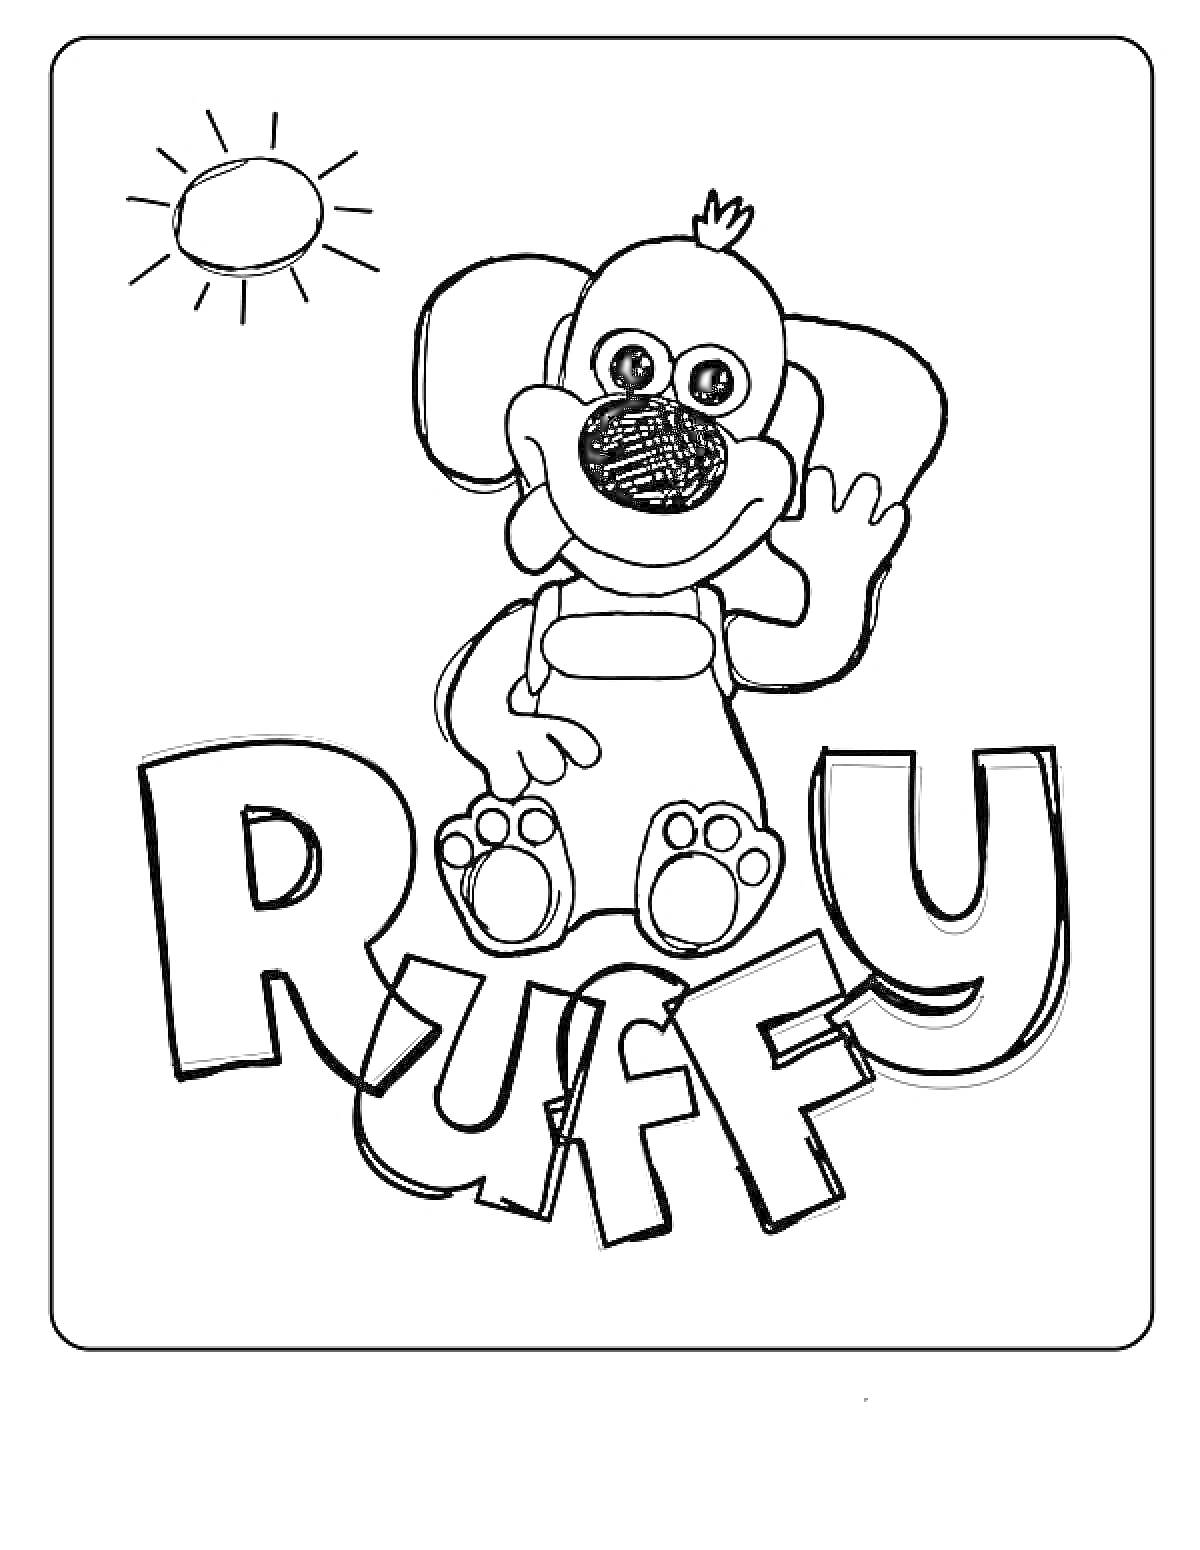 Раскраска Собака Тимми с поднятой лапой, солнце, надпись Ruffy